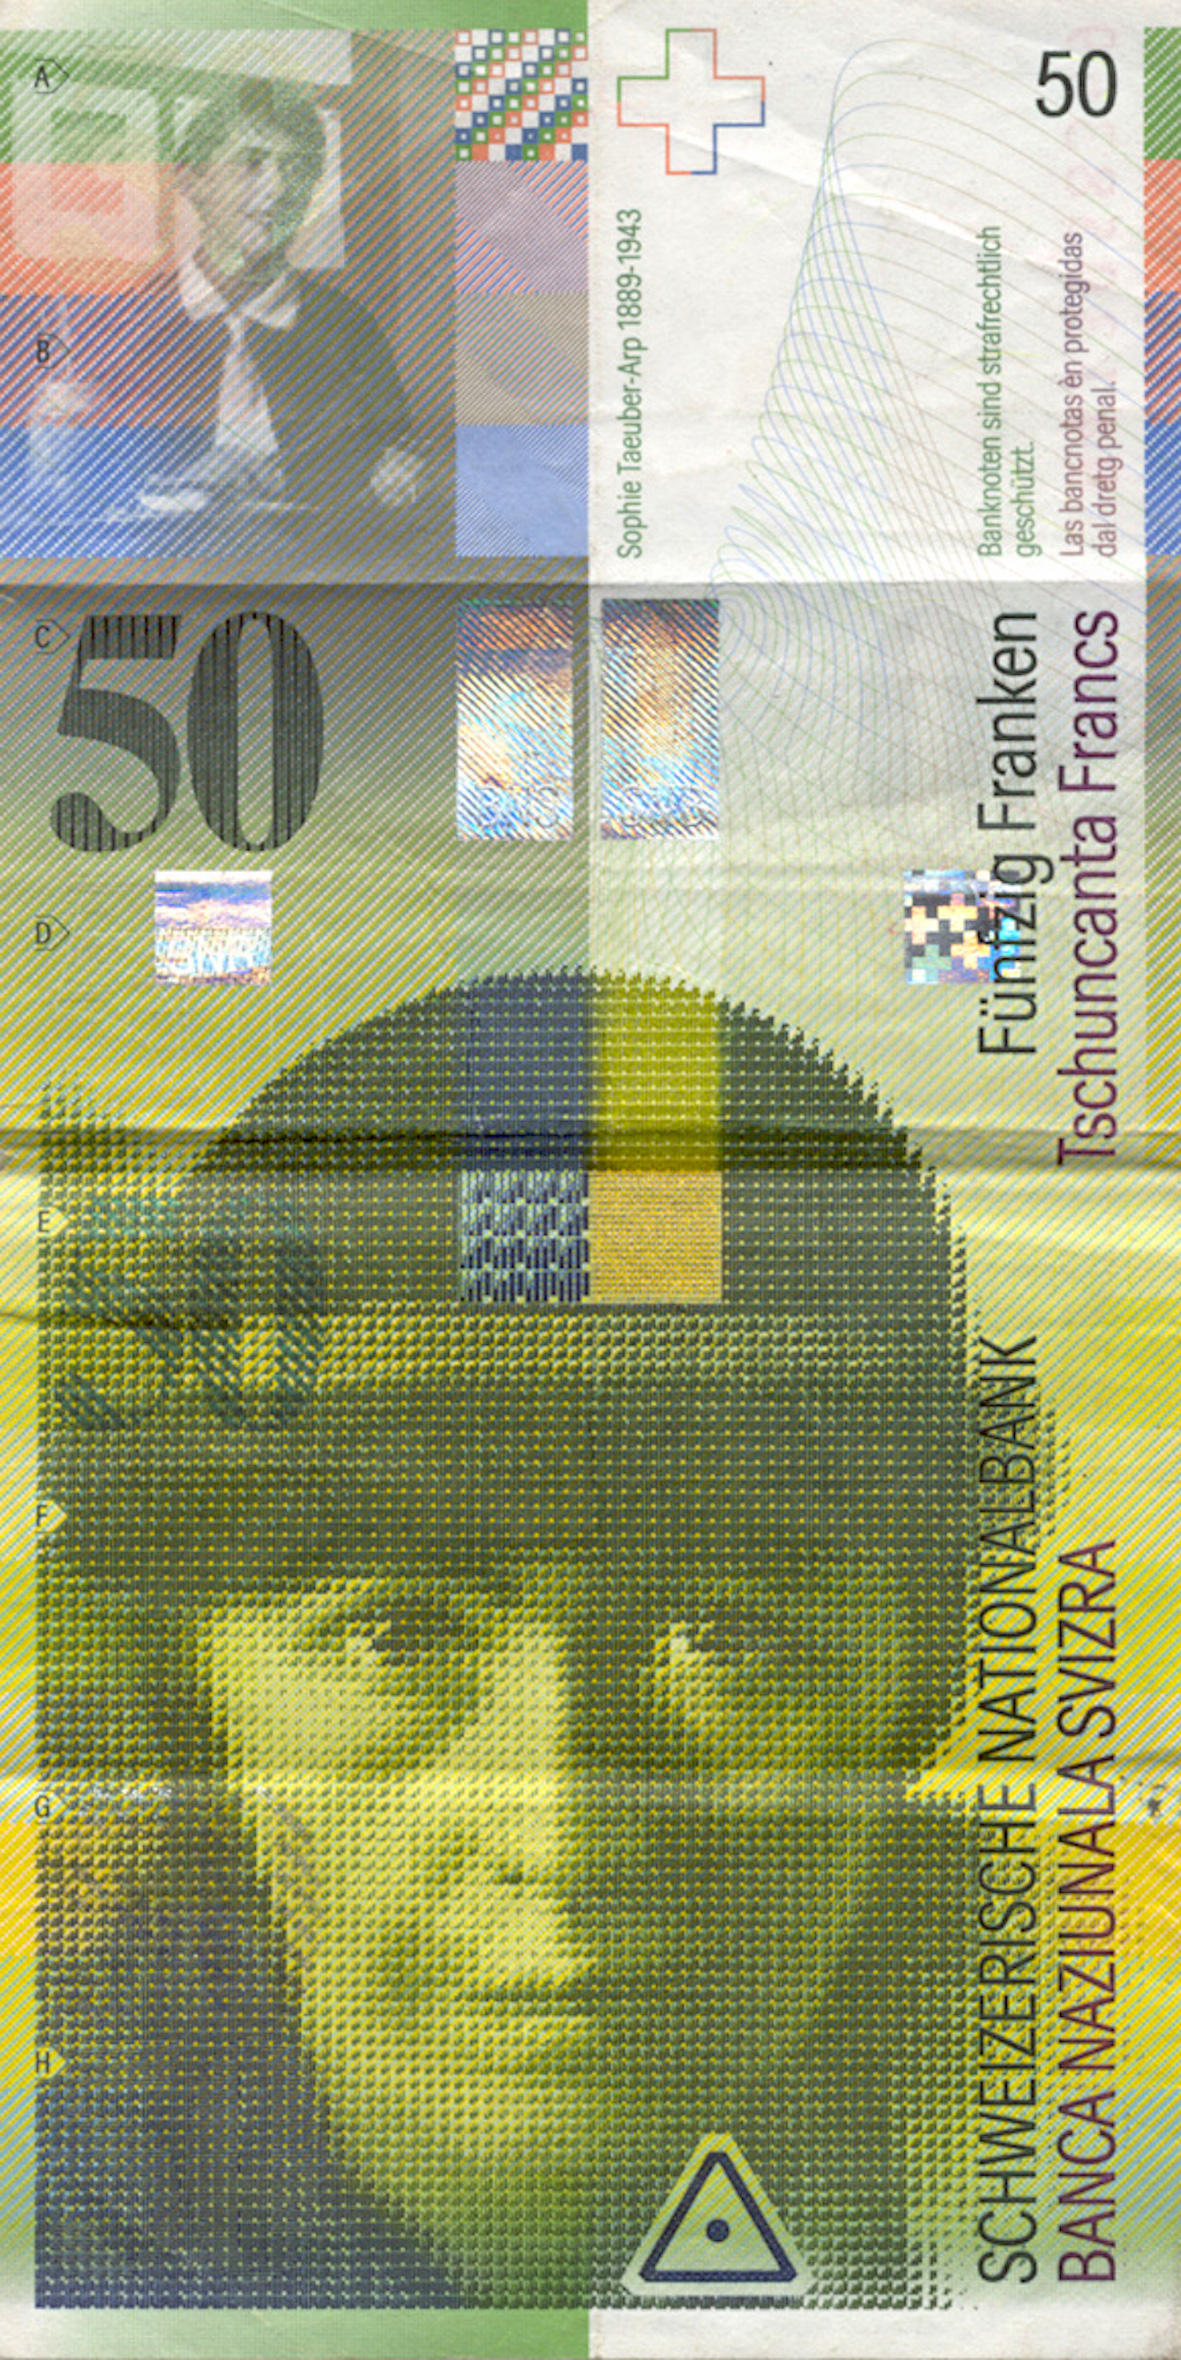 Schweizerische Eidgenossenschaft, 50 Franken, 8. Banknotenserie, in Kurs seit 1995 (obverse)